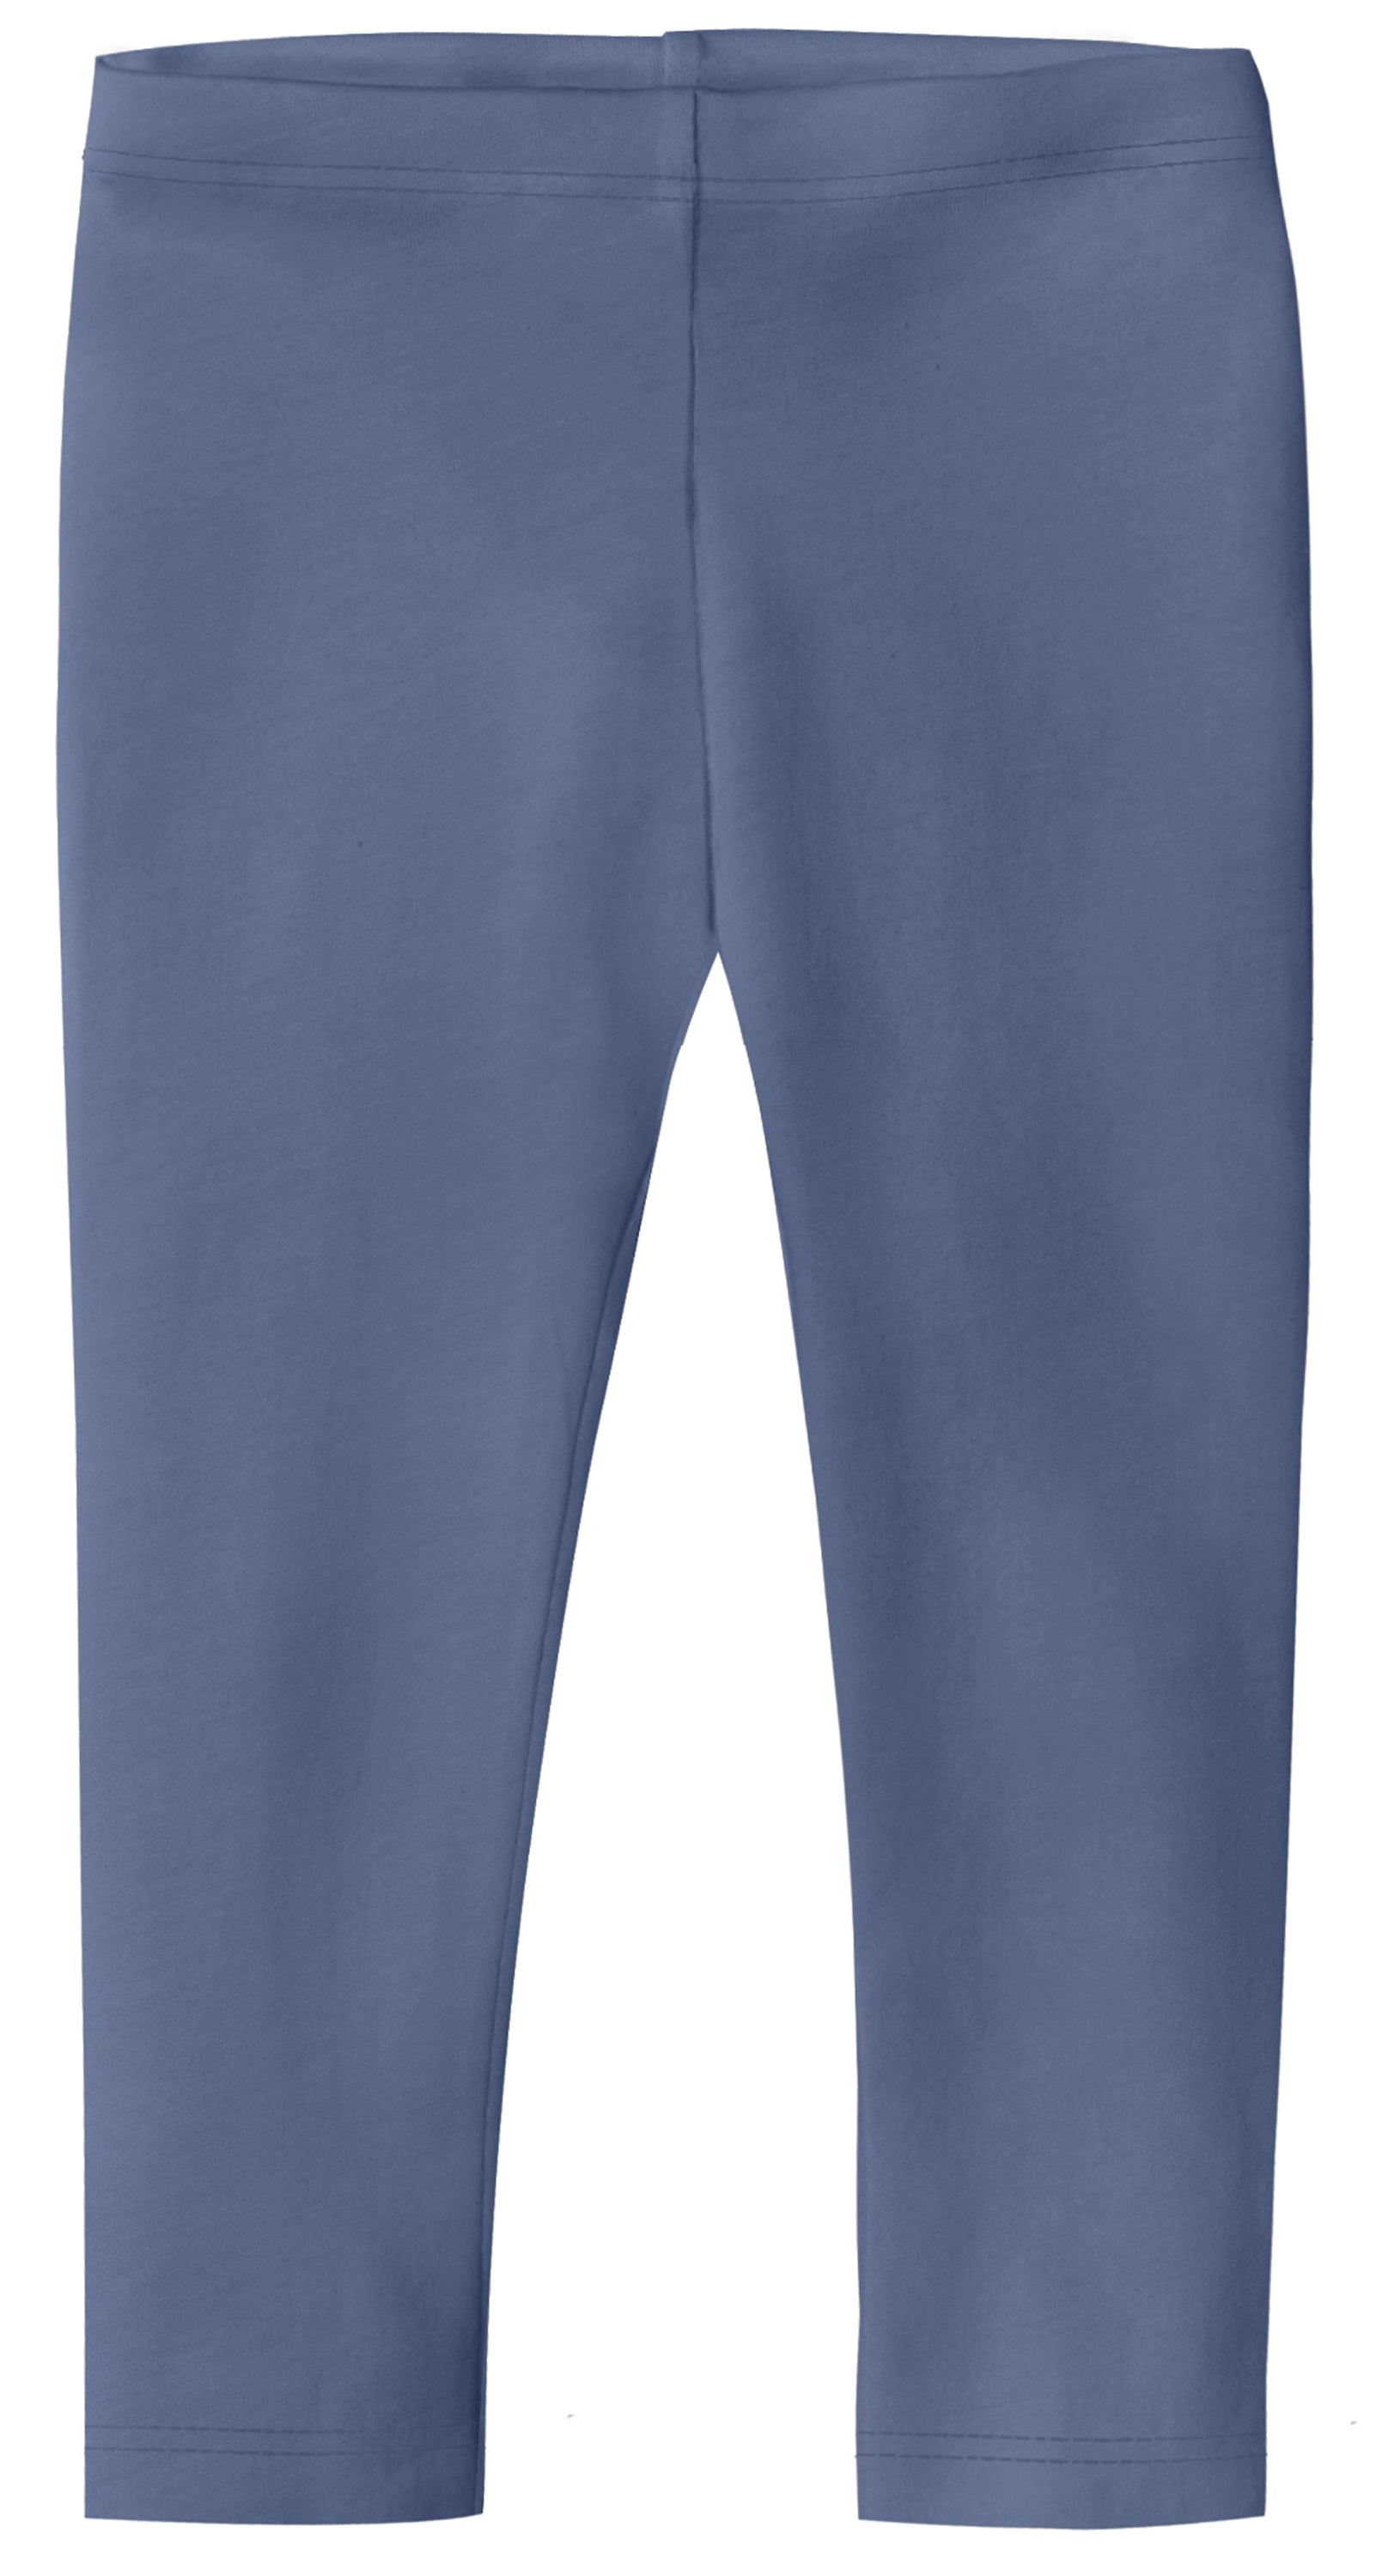 Capri leggings in Navy Blue colour – Tarsi